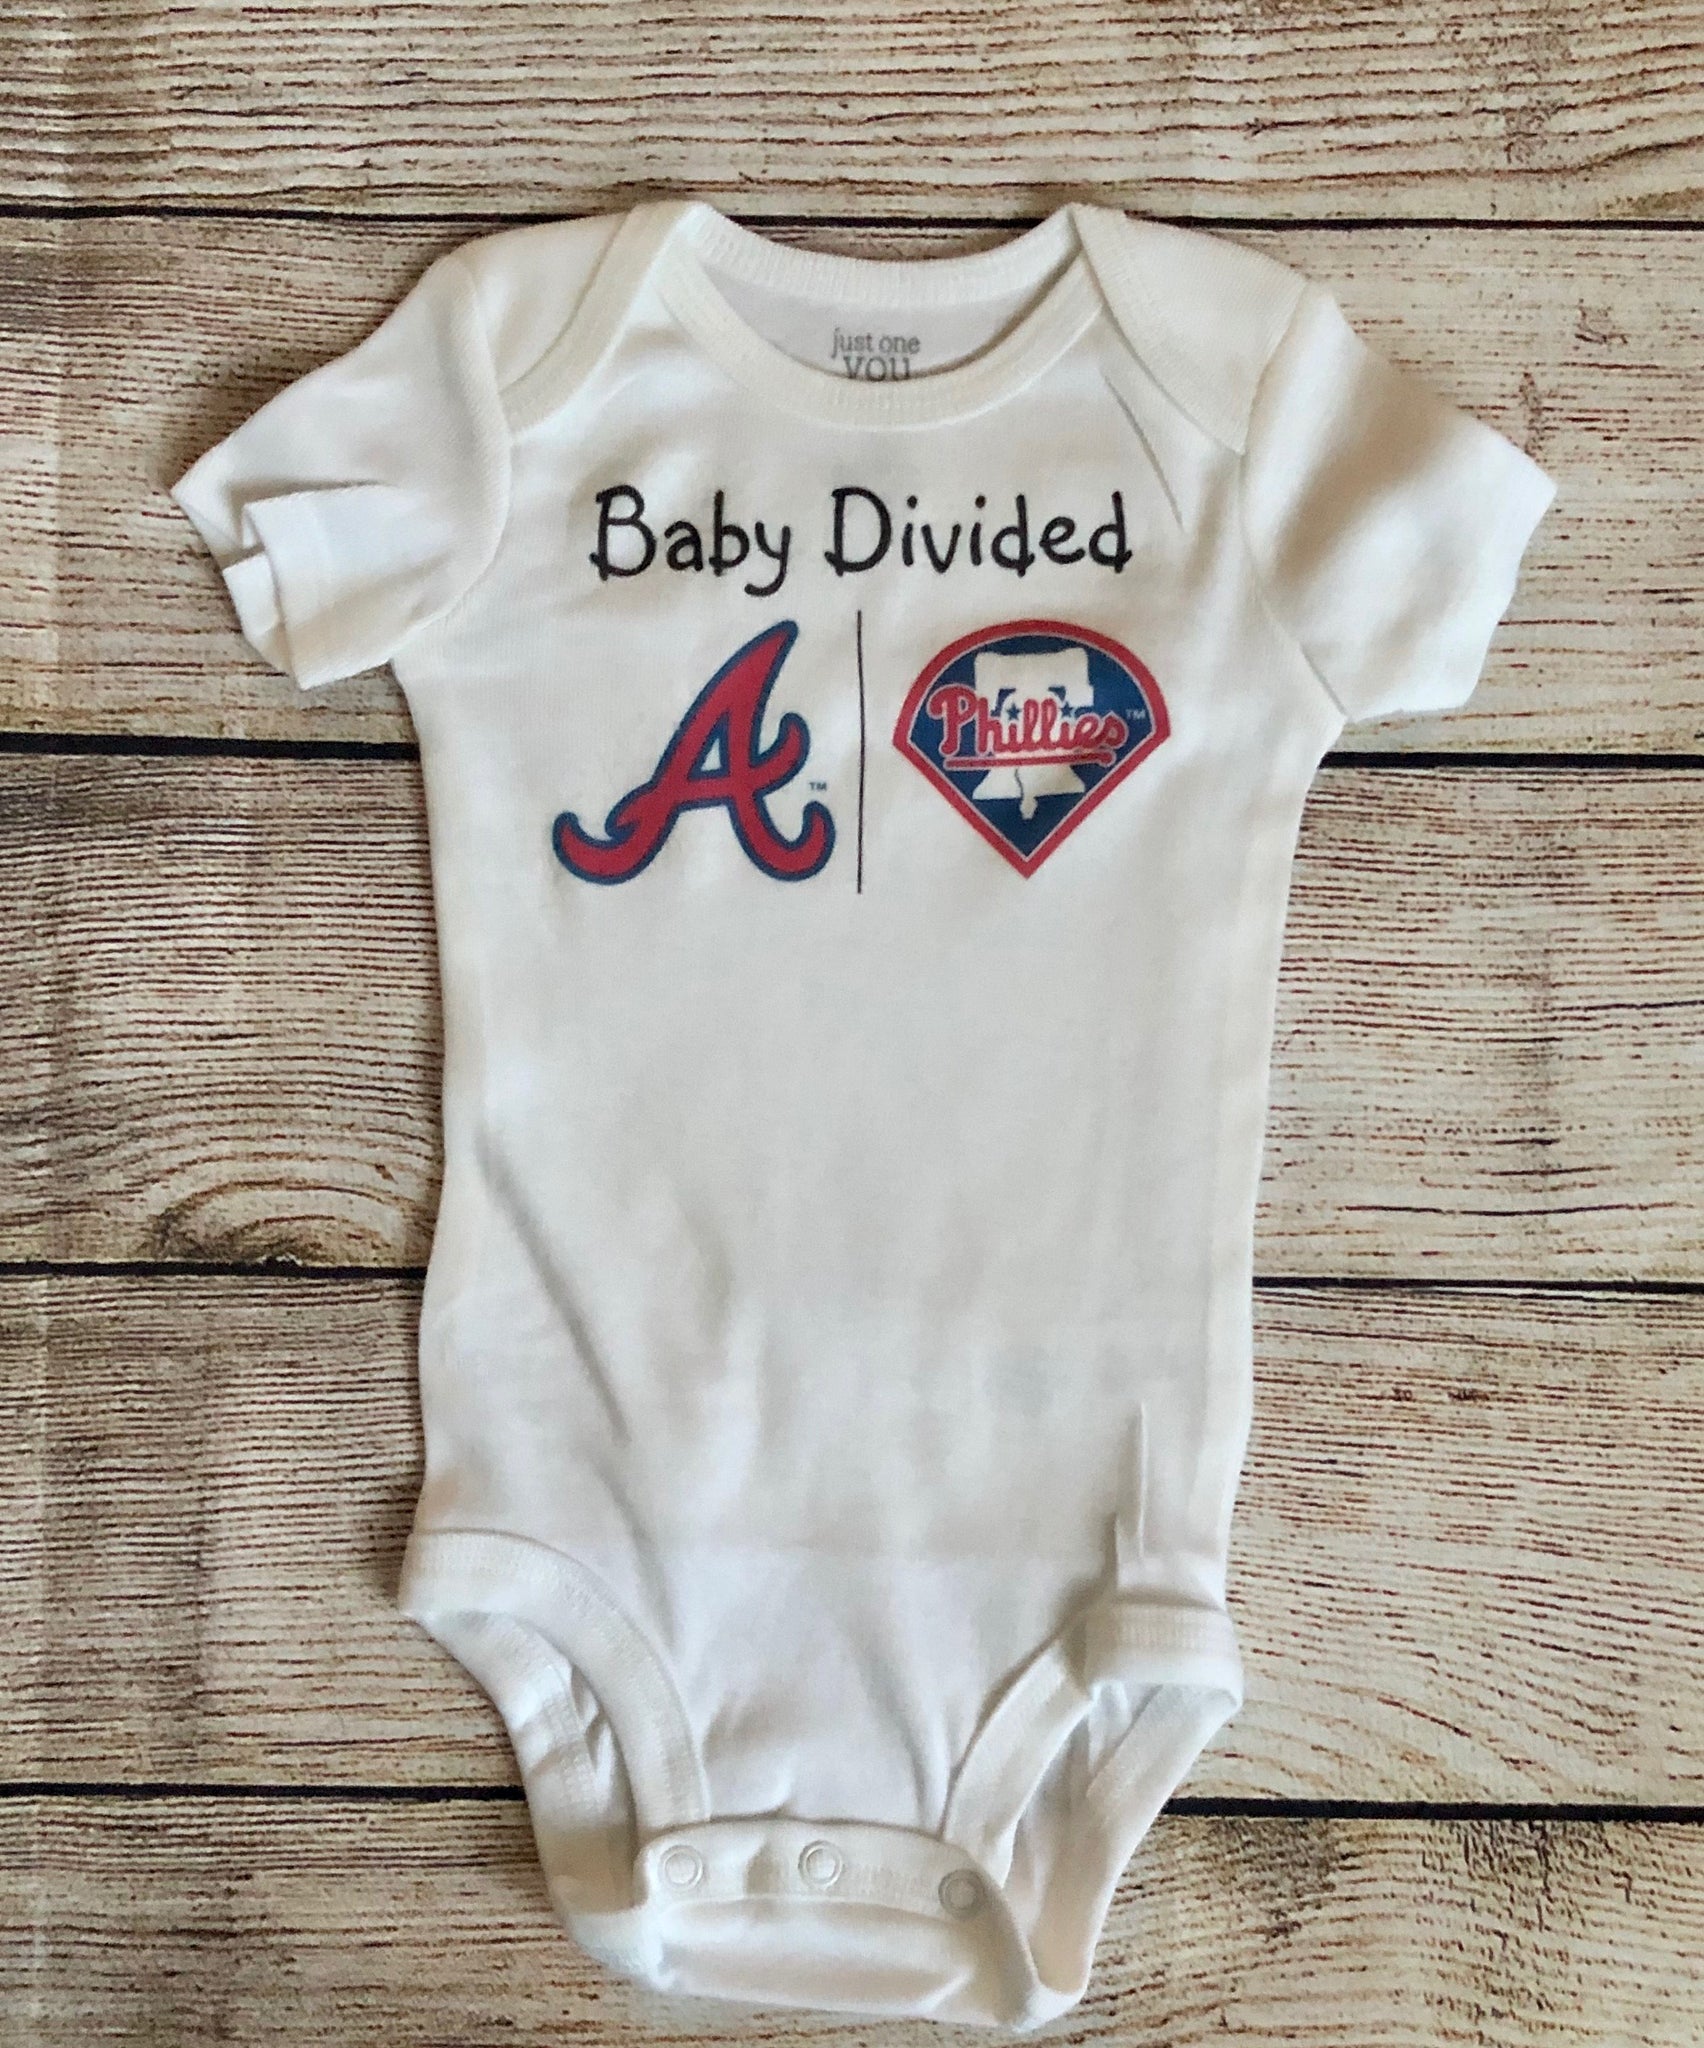 Braves baby/toddler dress Braves baby gift Atlanta baseball baby gift girl